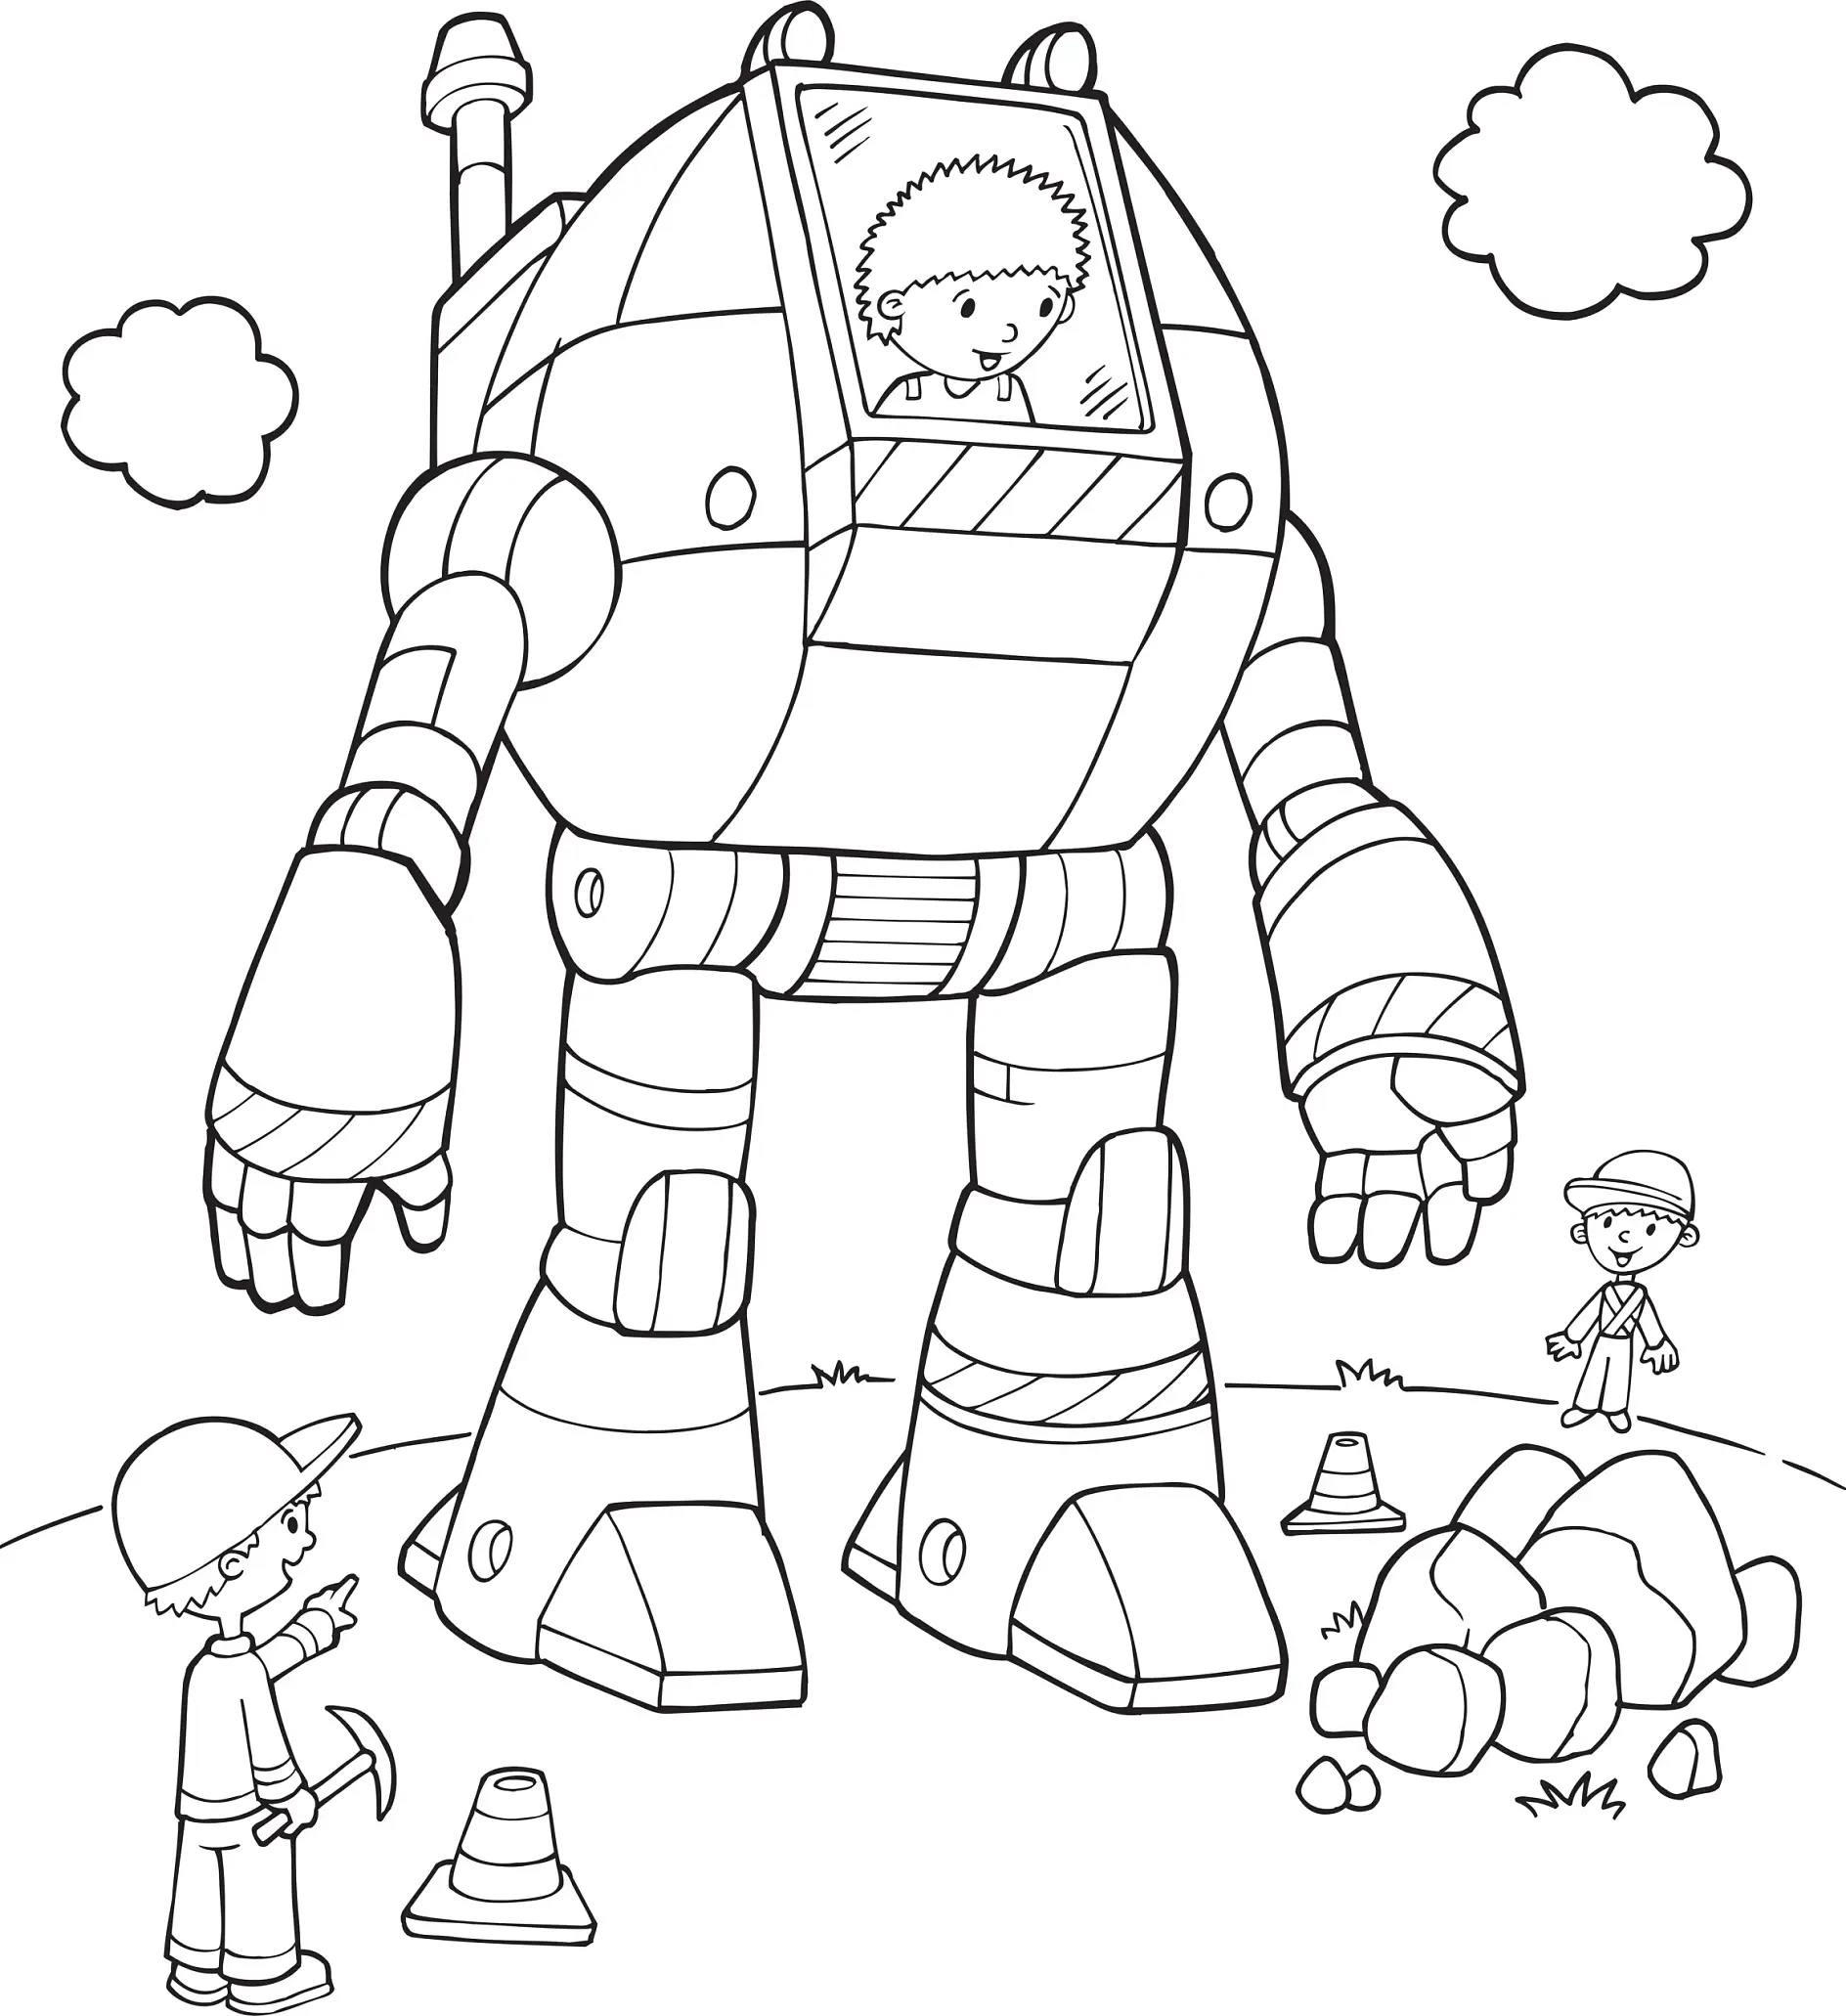 Ausmalbild Großer Roboter mit Kind und Bauarbeiter